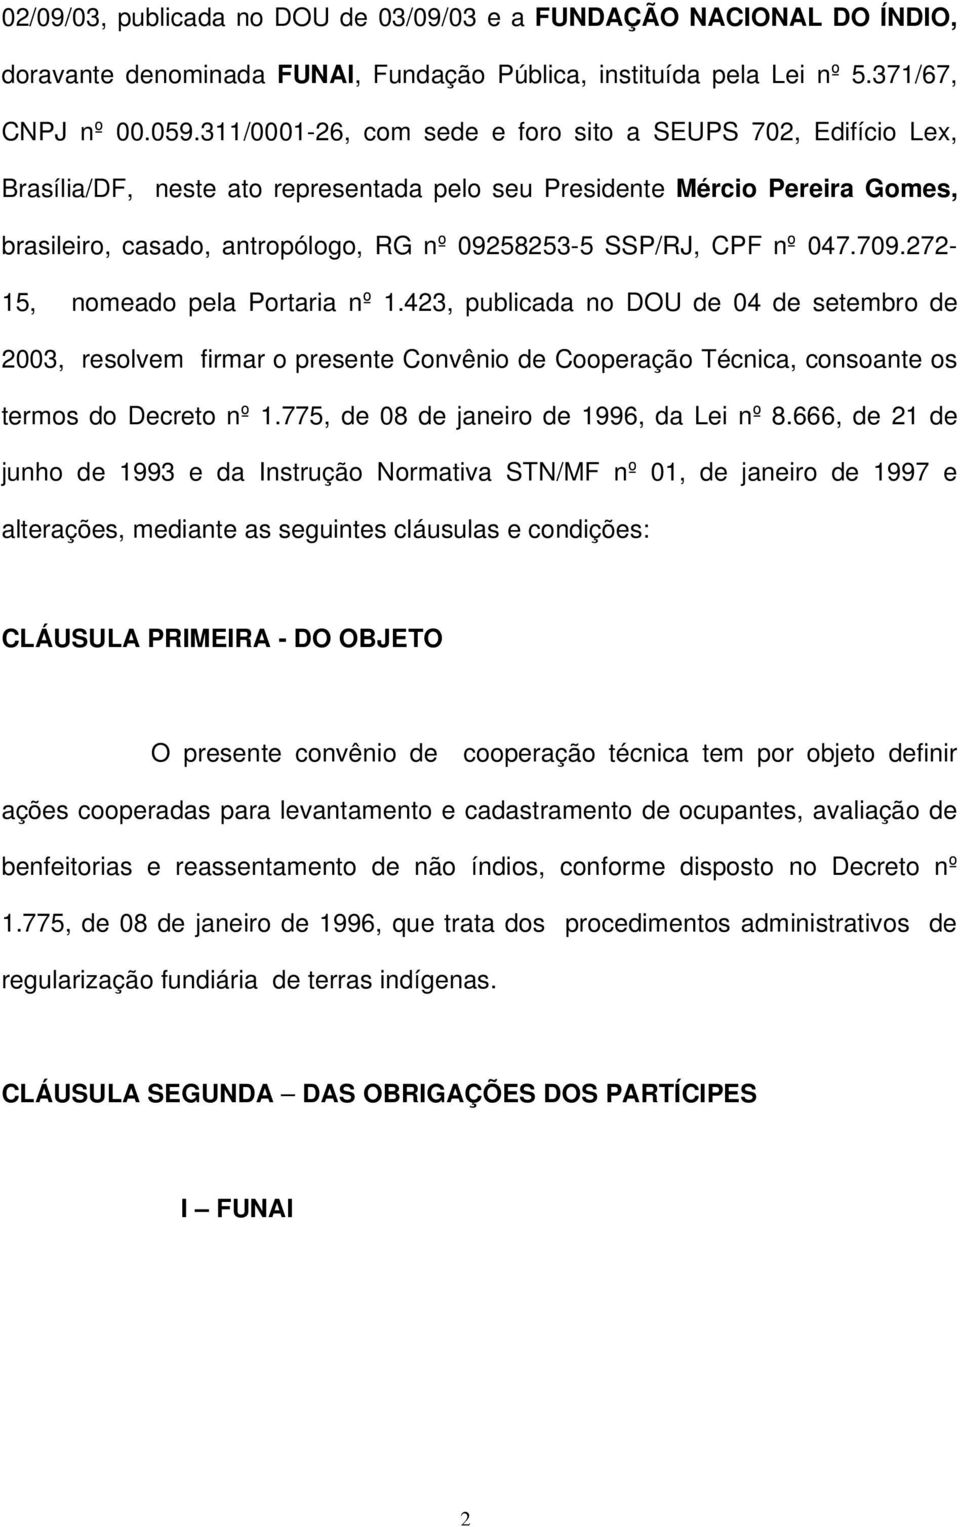 CPF nº 047.709.272-15, nomeado pela Portaria nº 1.423, publicada no DOU de 04 de setembro de 2003, resolvem firmar o presente Convênio de Cooperação Técnica, consoante os termos do Decreto nº 1.